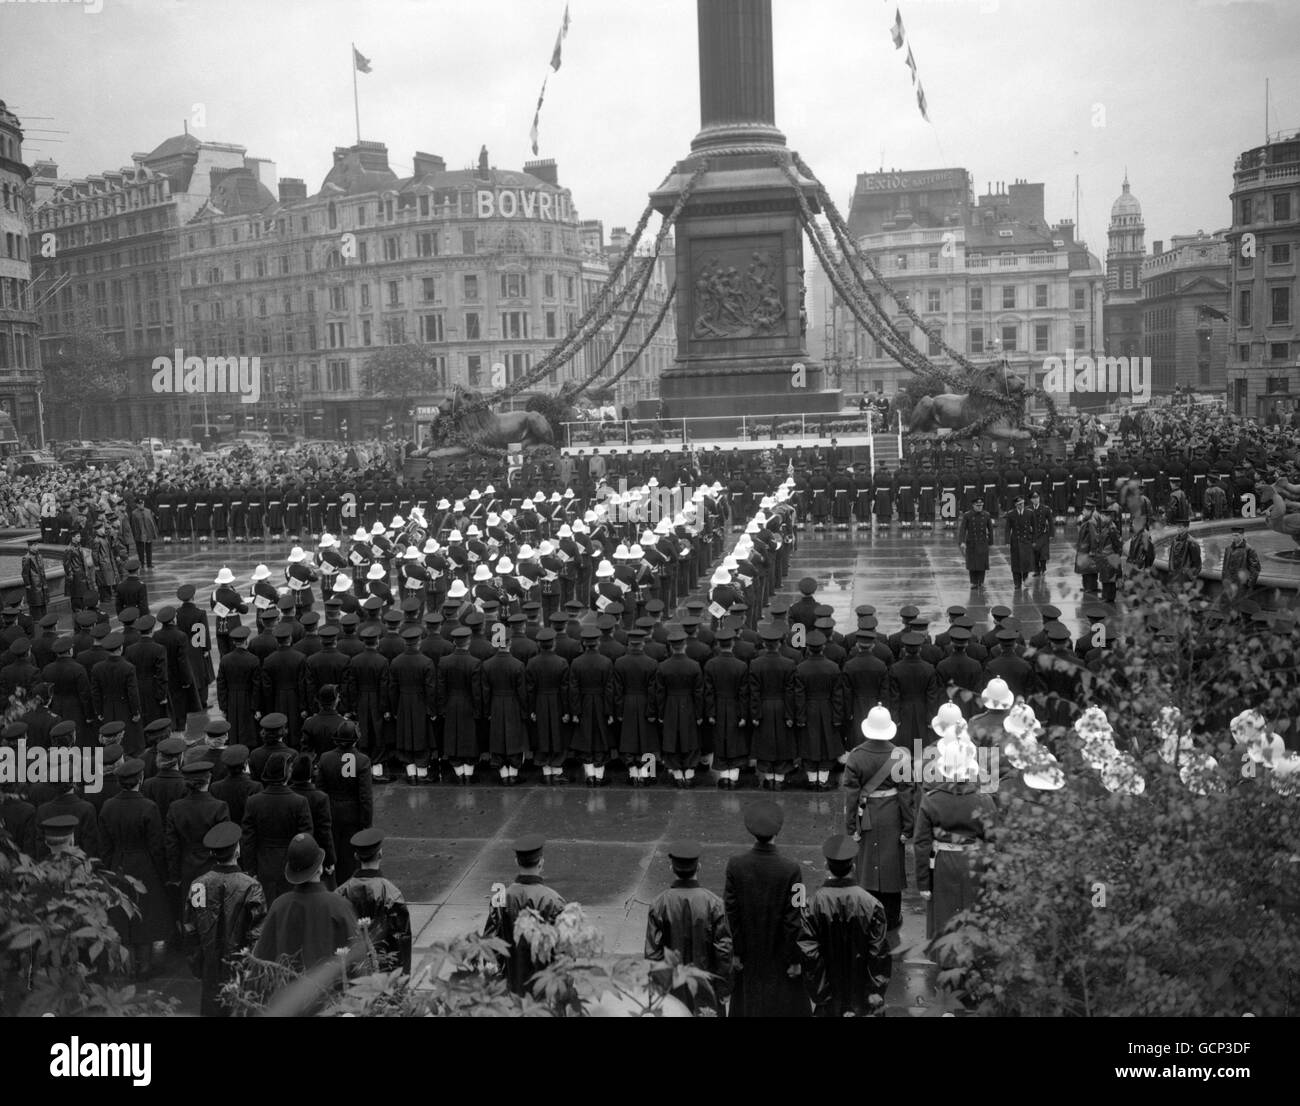 Auf dem Trafalgar Square in London, einem regnerisch durchnässten Trafalgar Square, sind die Royal Navy und die Marine Wachen aufmerksam, als der Herzog von Edinburgh (rechts) seine Inspektion bei der Trafalgar Day Zeremonie macht. Die Zeremonie erinnert an den 150. Jahrestag der Schlacht. Stockfoto